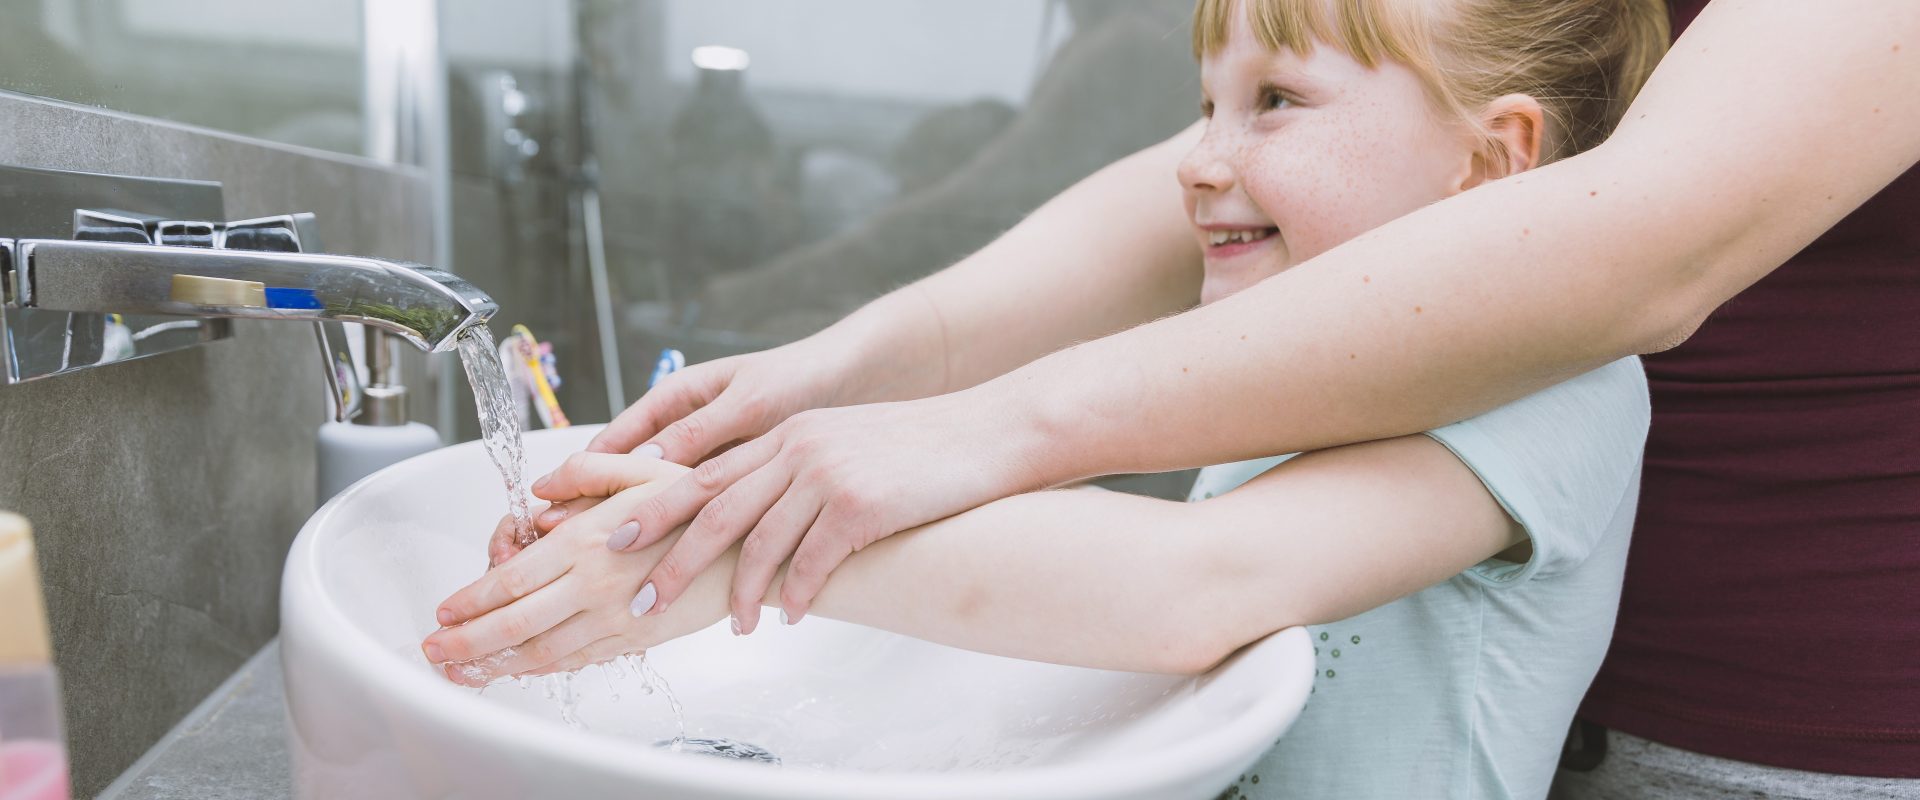 تفسير حلم غسل اليدين للحامل